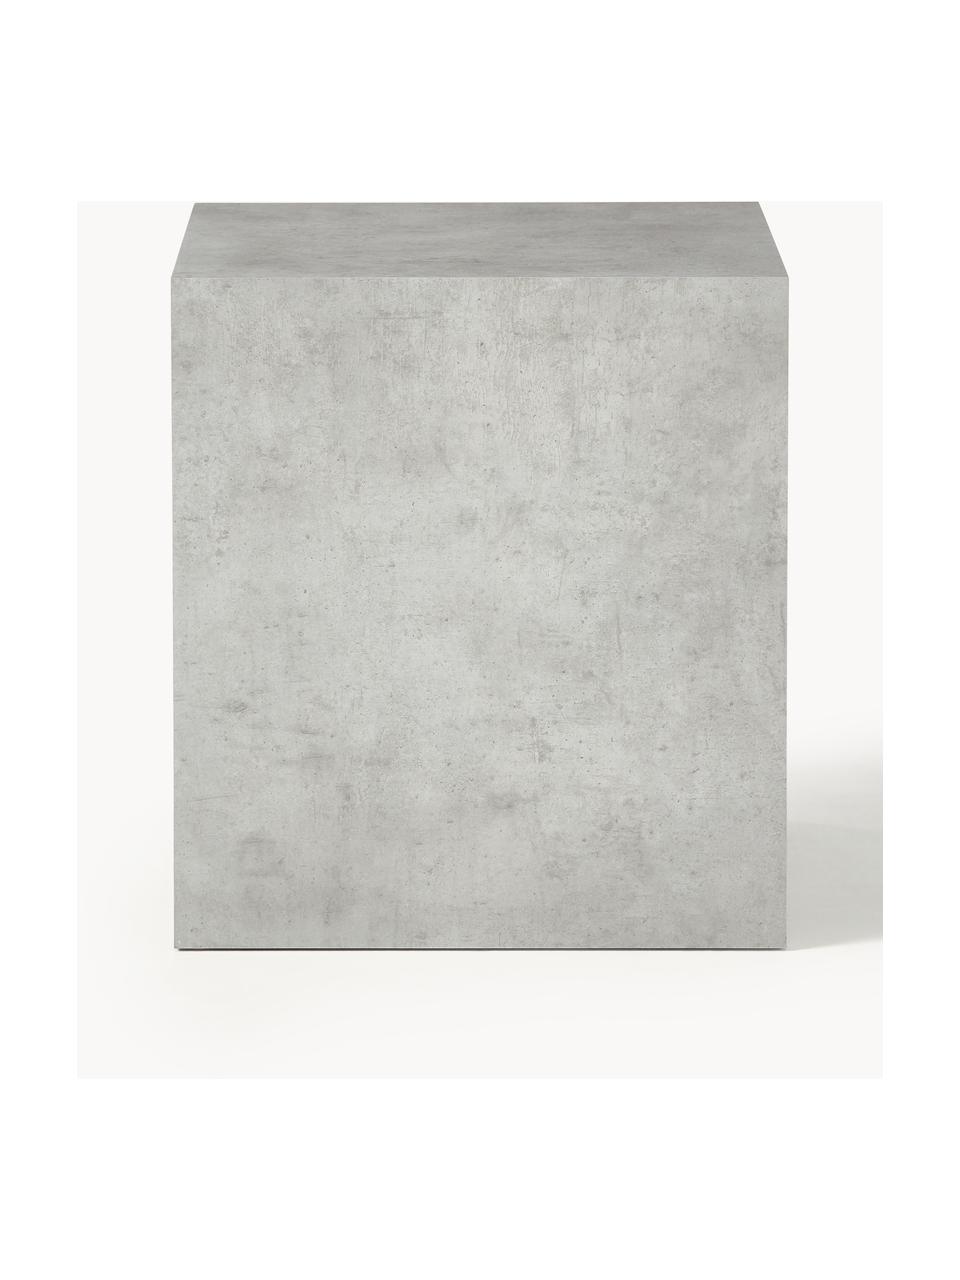 Bijzettafel Lesley in marmerlook, MDF bekleed met melaminefolie, Betonlook grijs, mat, B 45 x H 50 cm